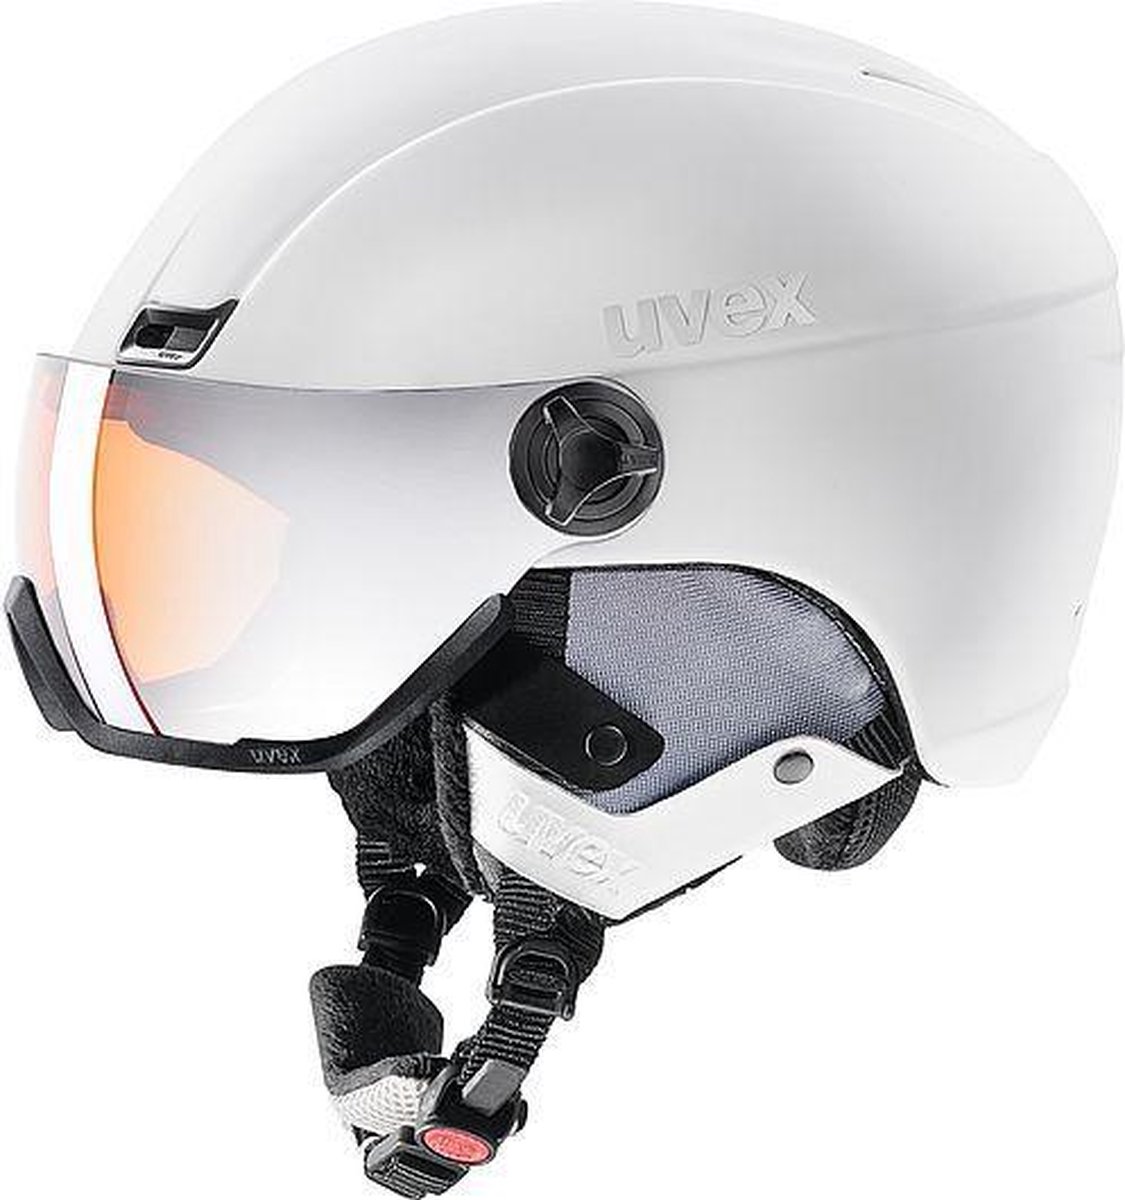 Uvex skihelm 400 visor style White mat 58-61cm bol.com